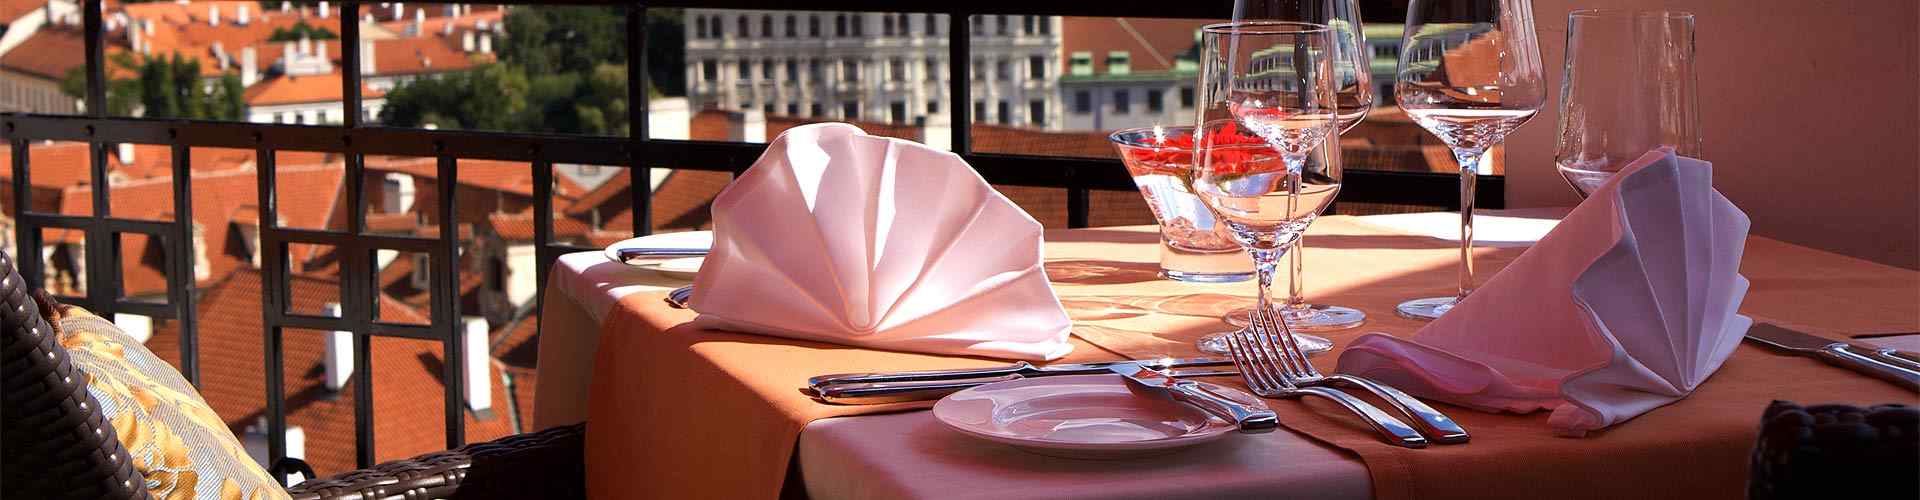 Restaurantes románticos con terraza en Fonollosa
          
          
